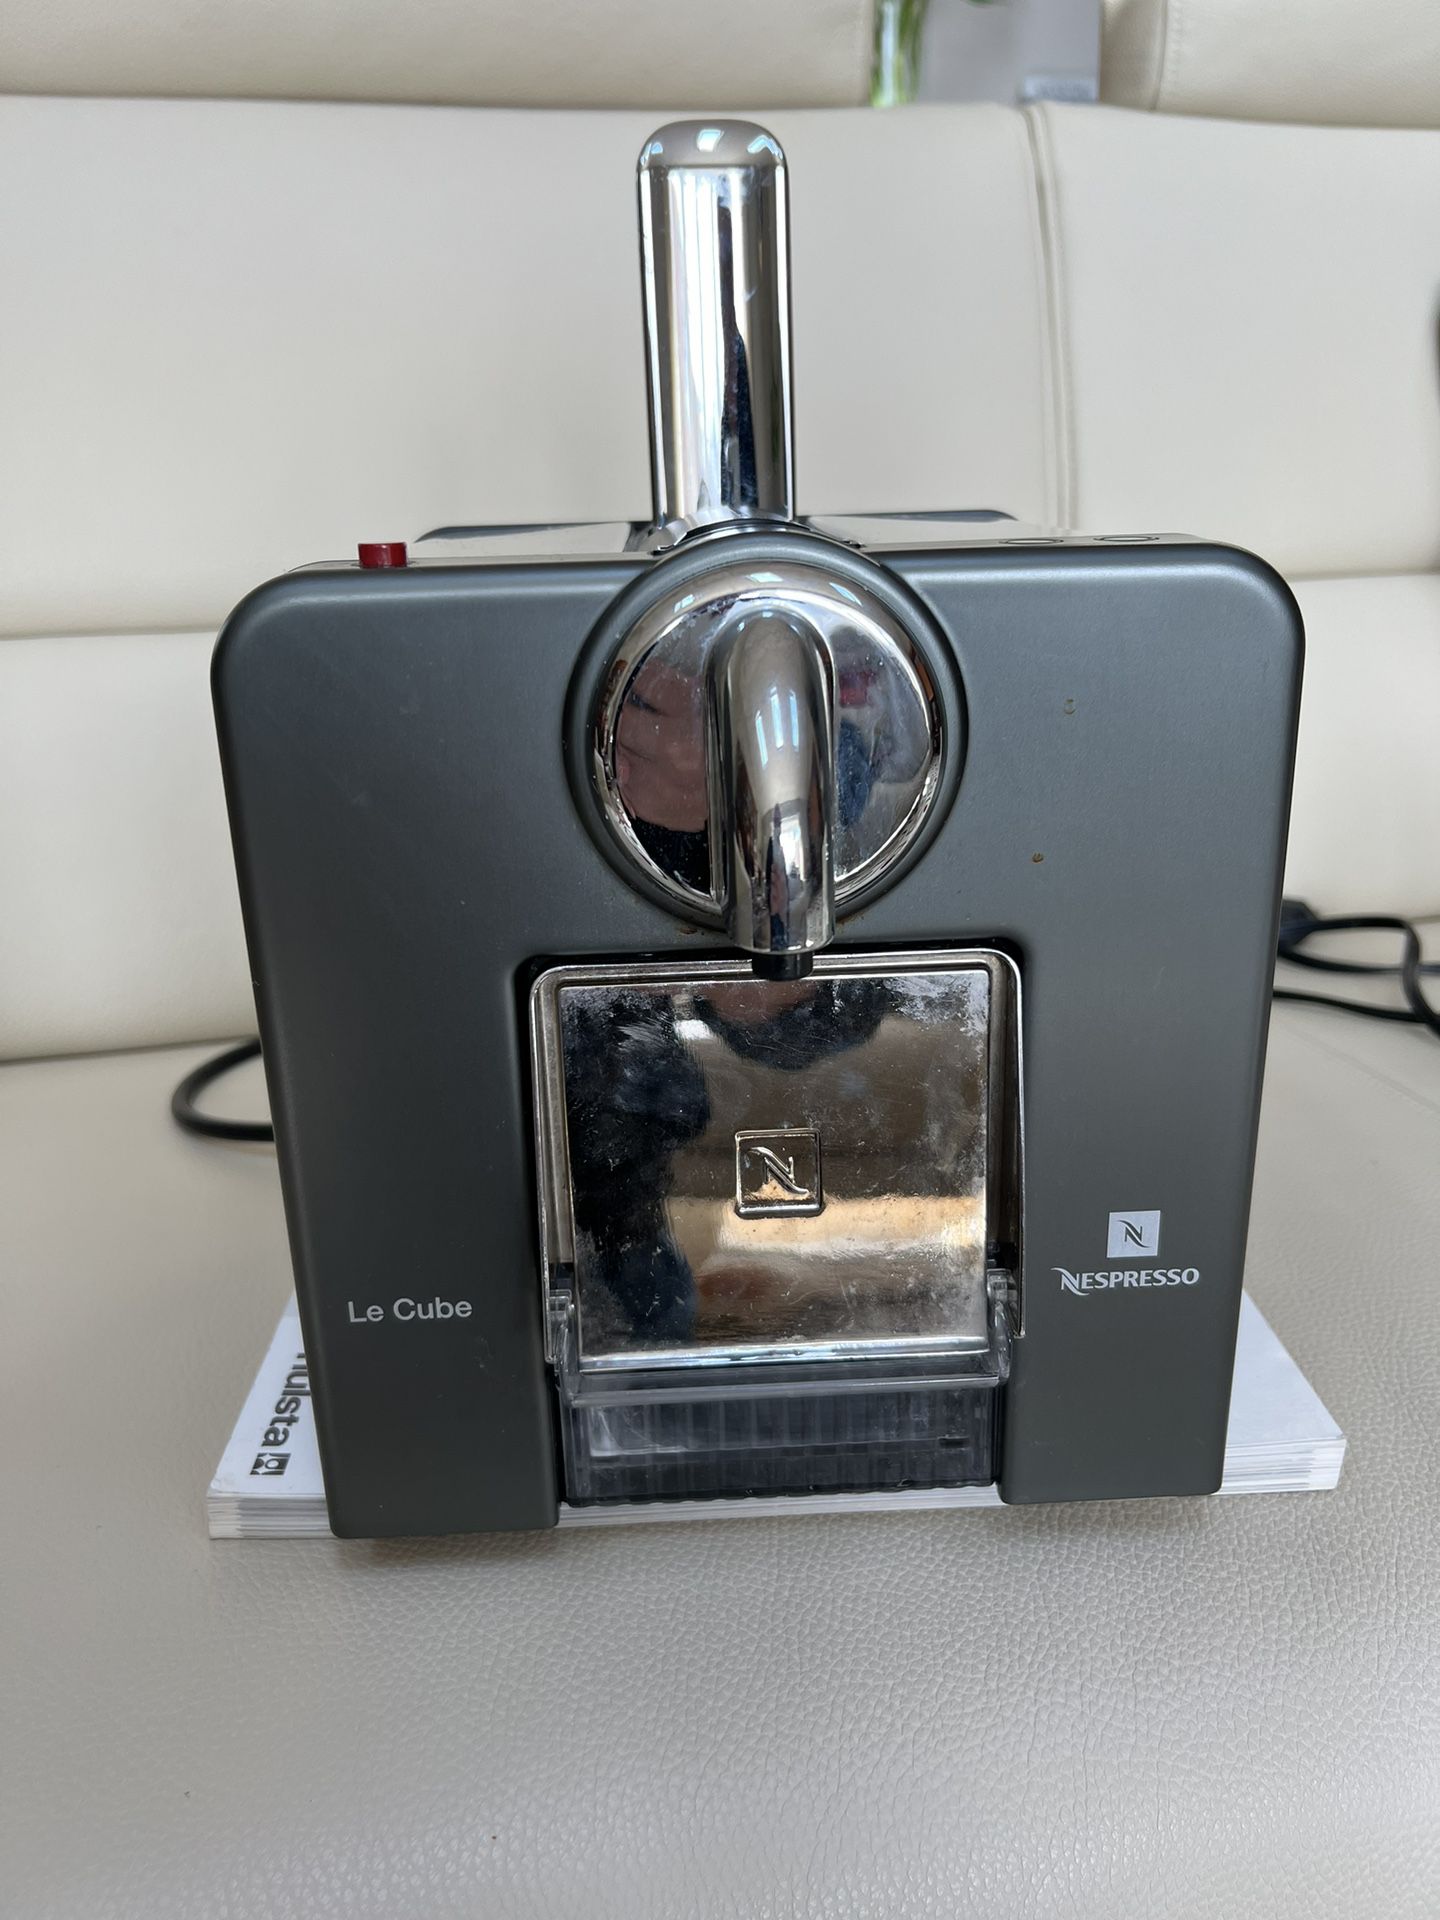 Nespresso Le Cube Automatic Espresso Machine, W for Sale NY - OfferUp